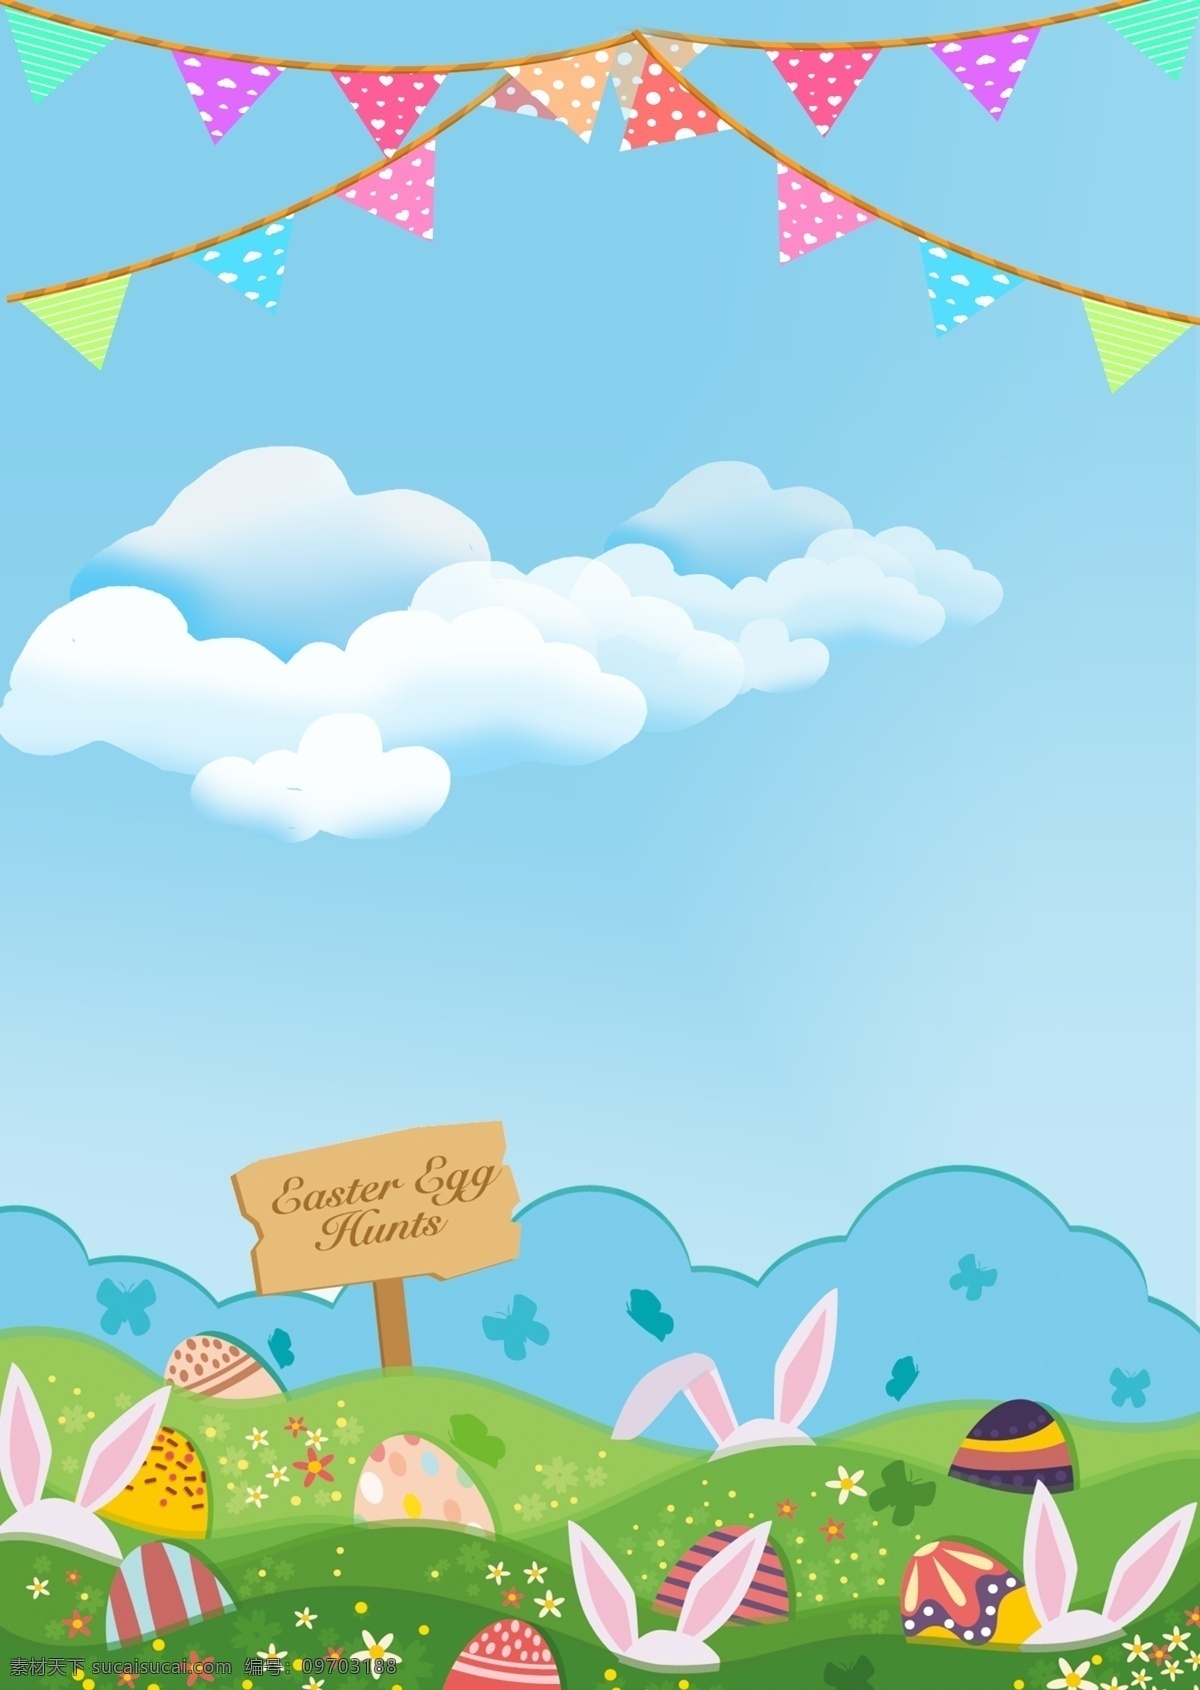 复活节 插画 海报 背景 兔子 鸡蛋 白色 蓝色 蓝天 白云 旗子 开心 喜悦 节日 西方文化